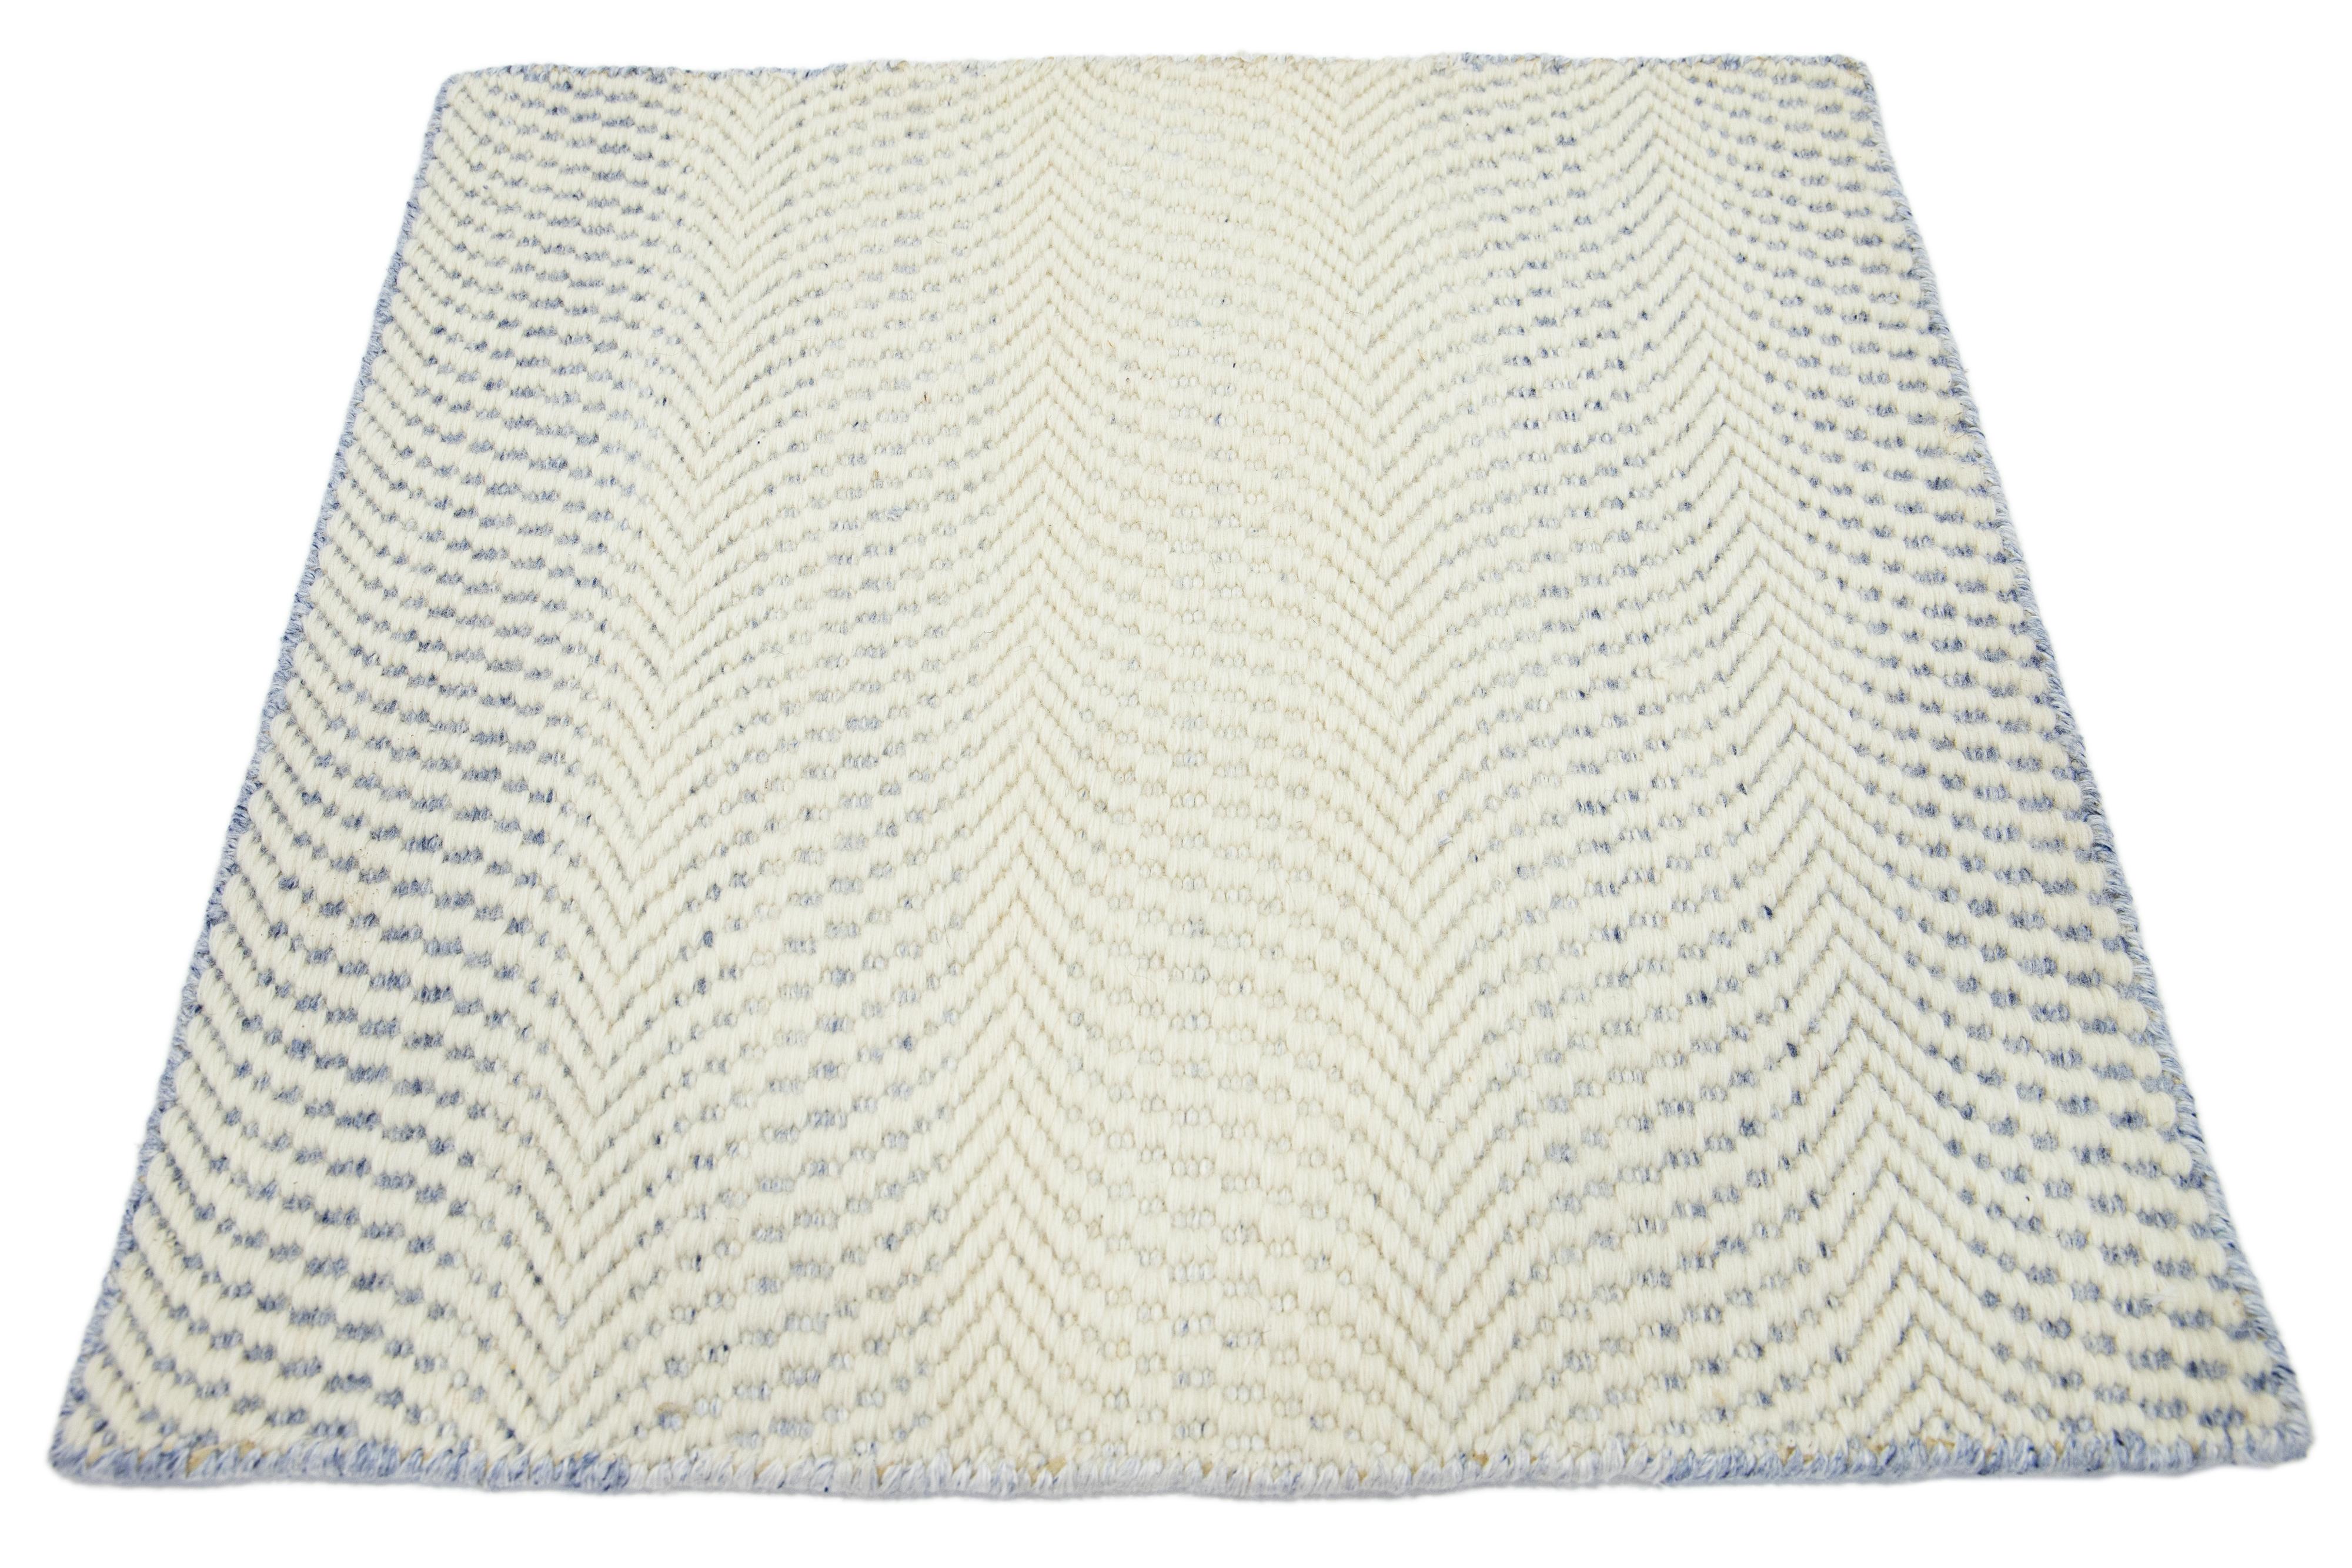 Moderner marokkanischer Teppich aus neuseeländischer Wolle von Apadana. Kundenspezifische Größen und Farben auf Bestellung. 

Material: Neuseeländische Wolle 
Techniken: Handgeknüpft
Stil: Marokkanisch 
Vorlaufzeit: Ca. 15-16 Wochen verfügbar